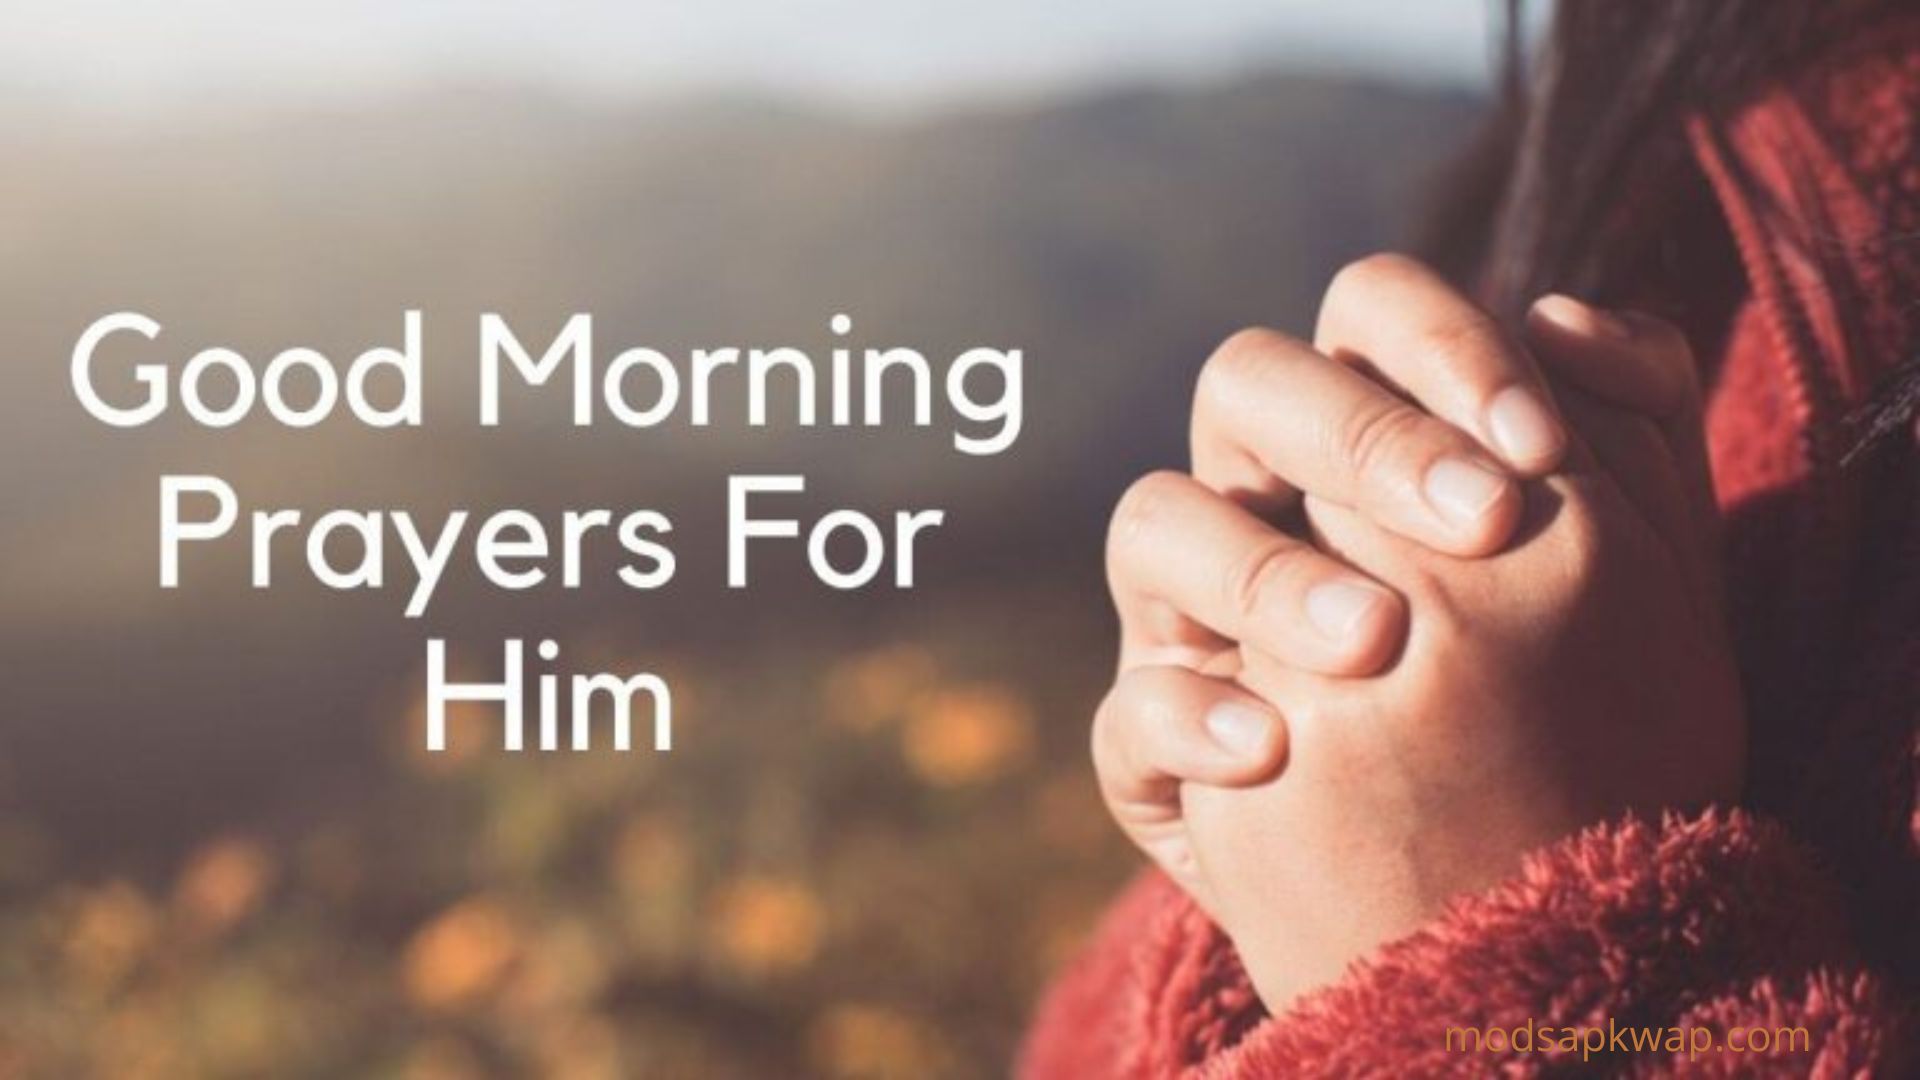 Good Morning Prayer For Him